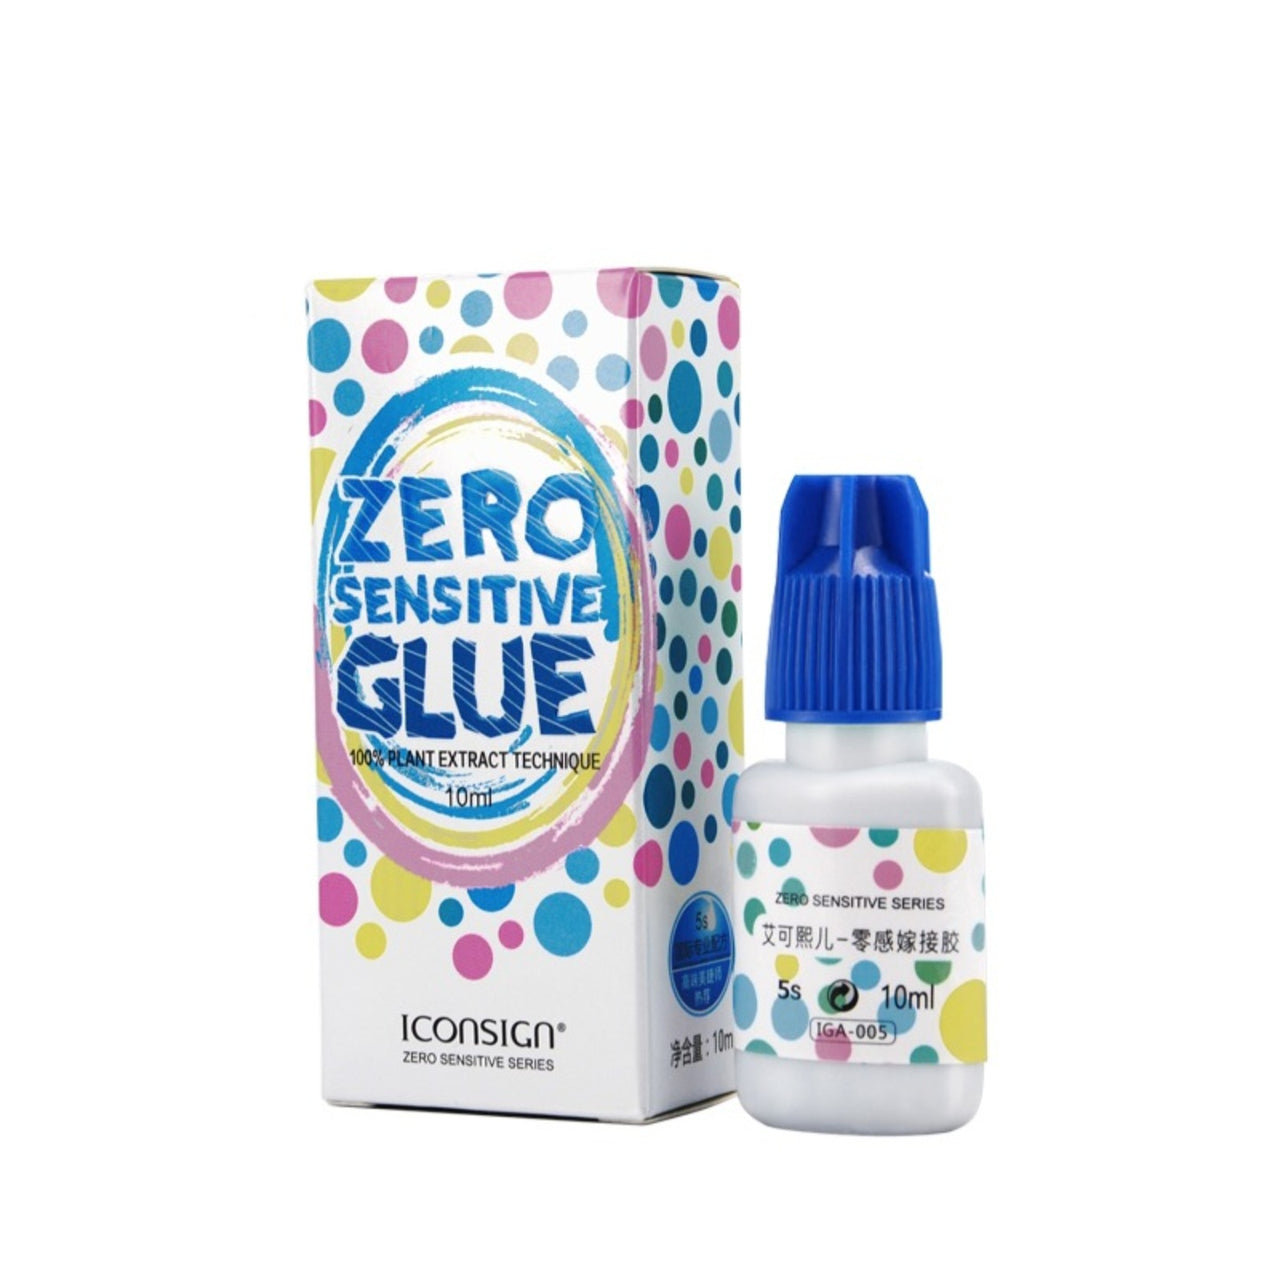 Iconsign Zero Sensitive Premium Lash Glue